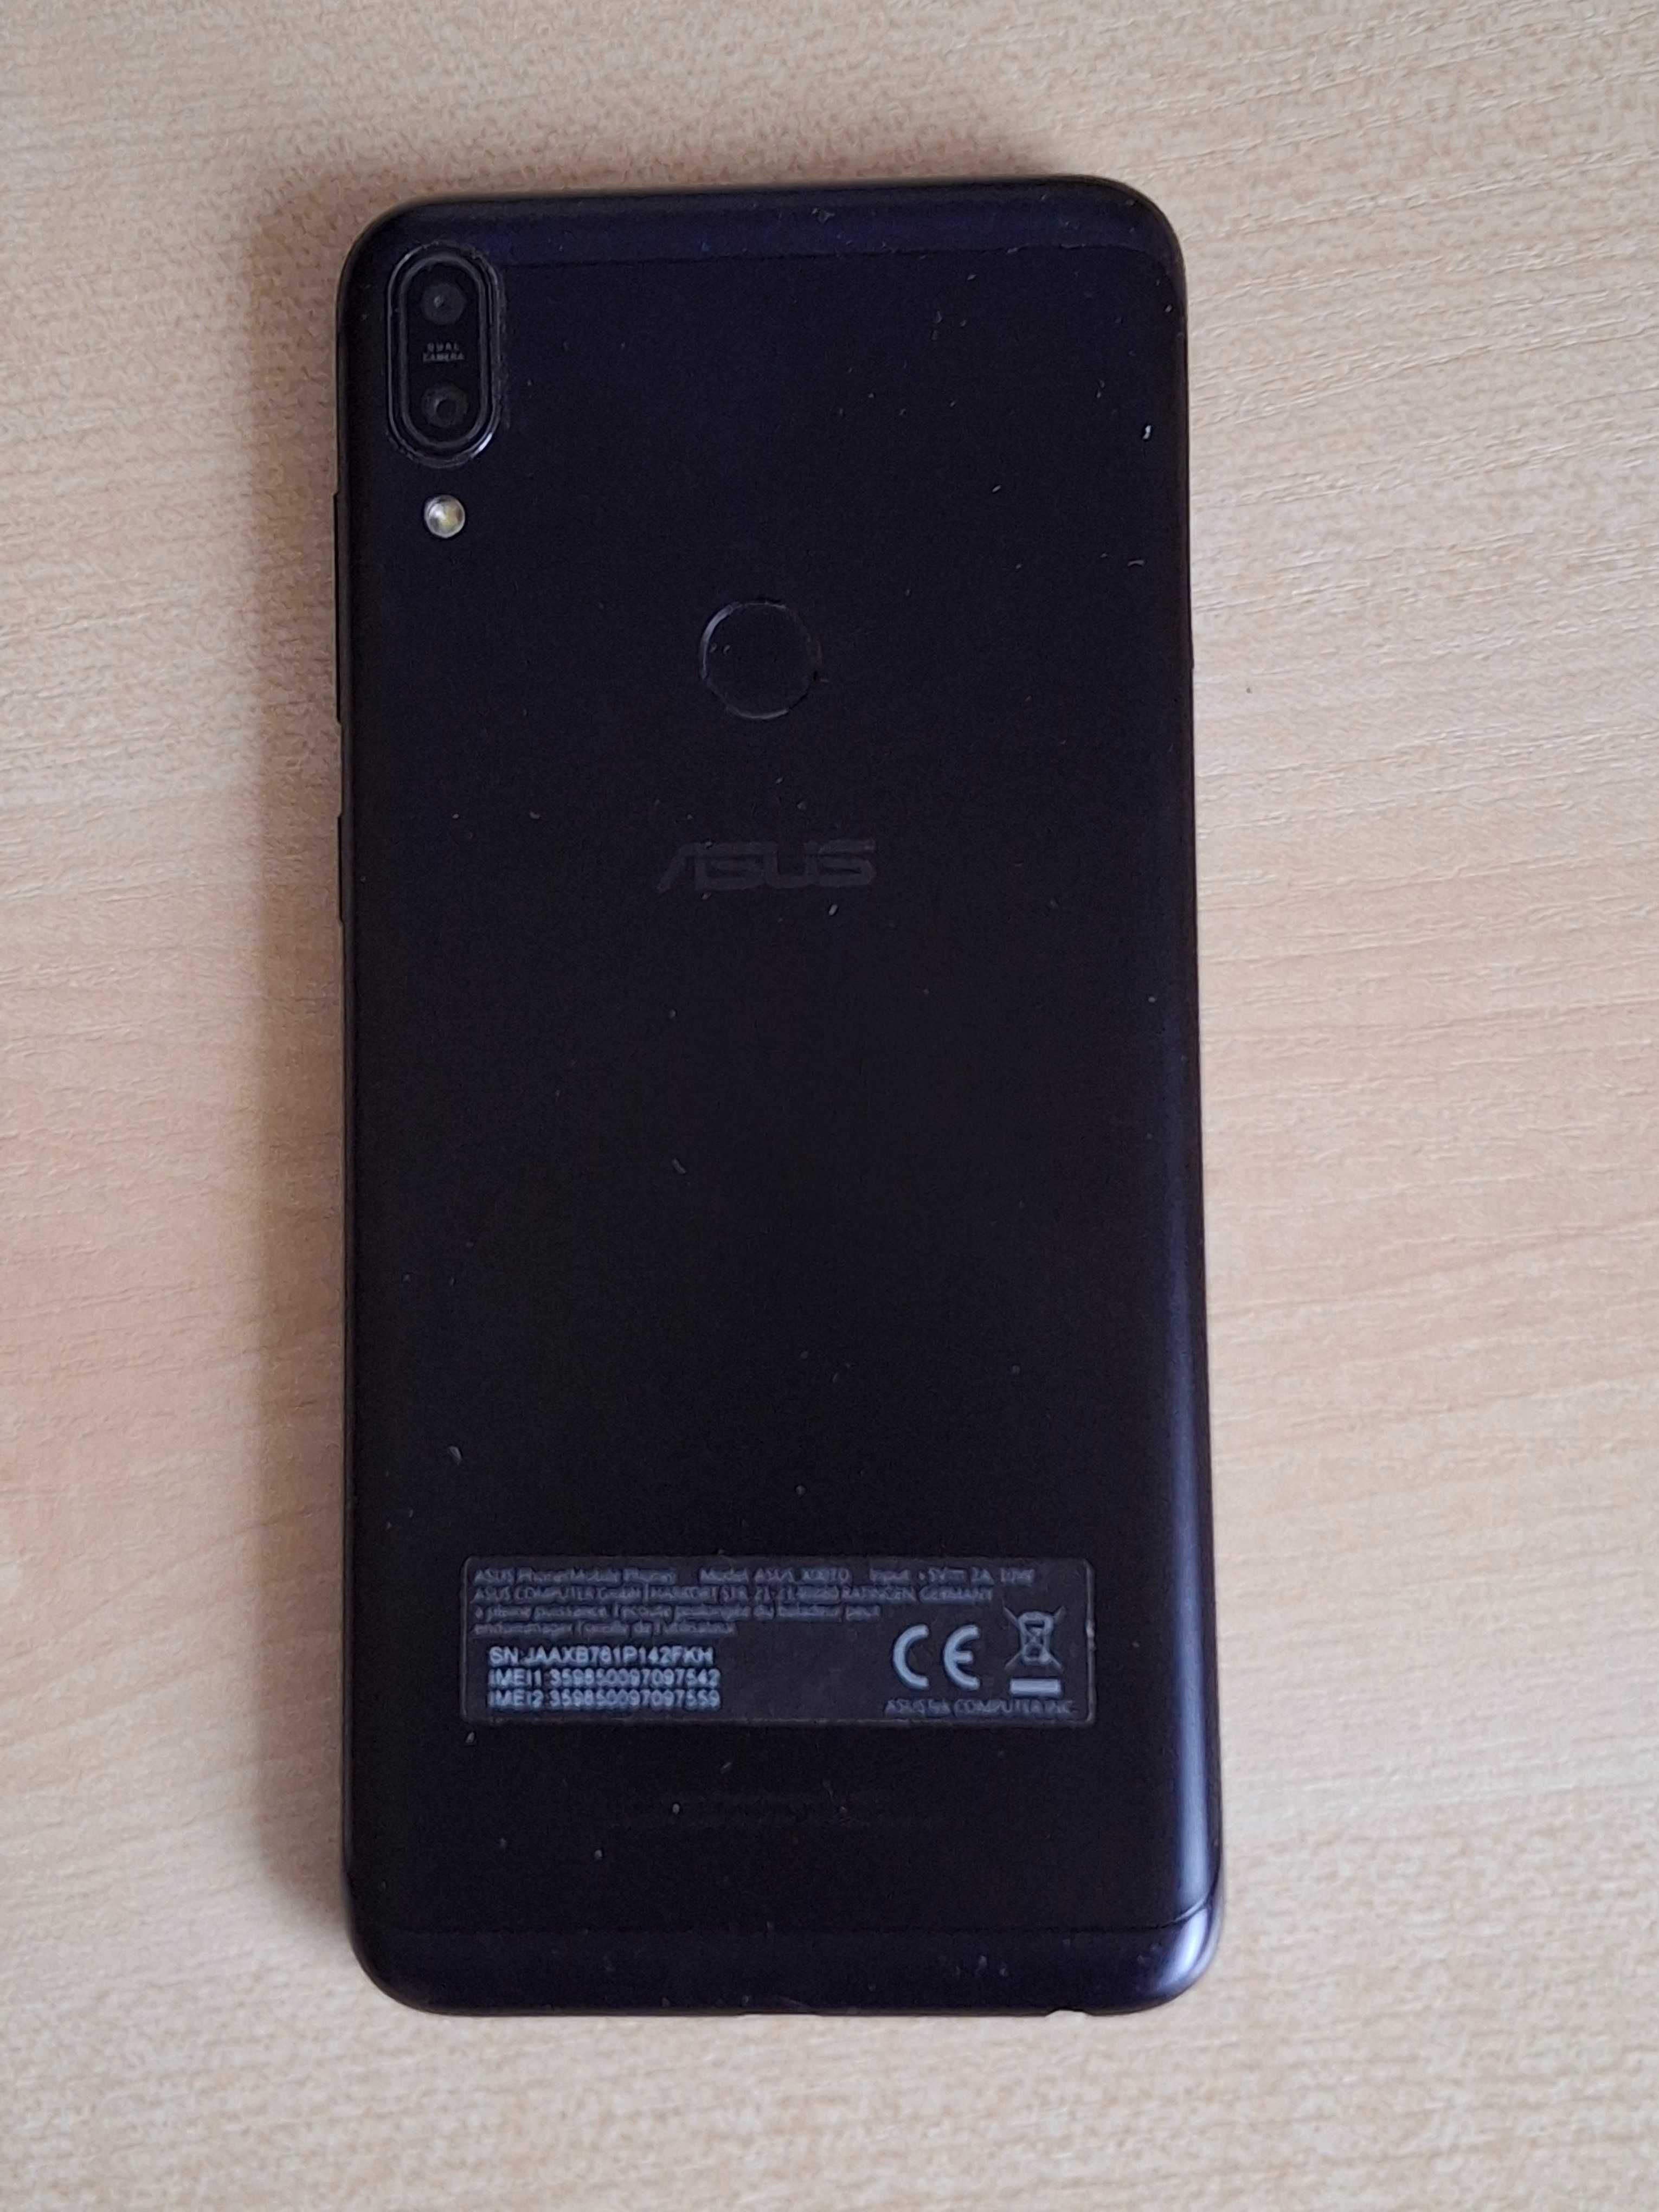 Asus Zenfone Max Pro m1